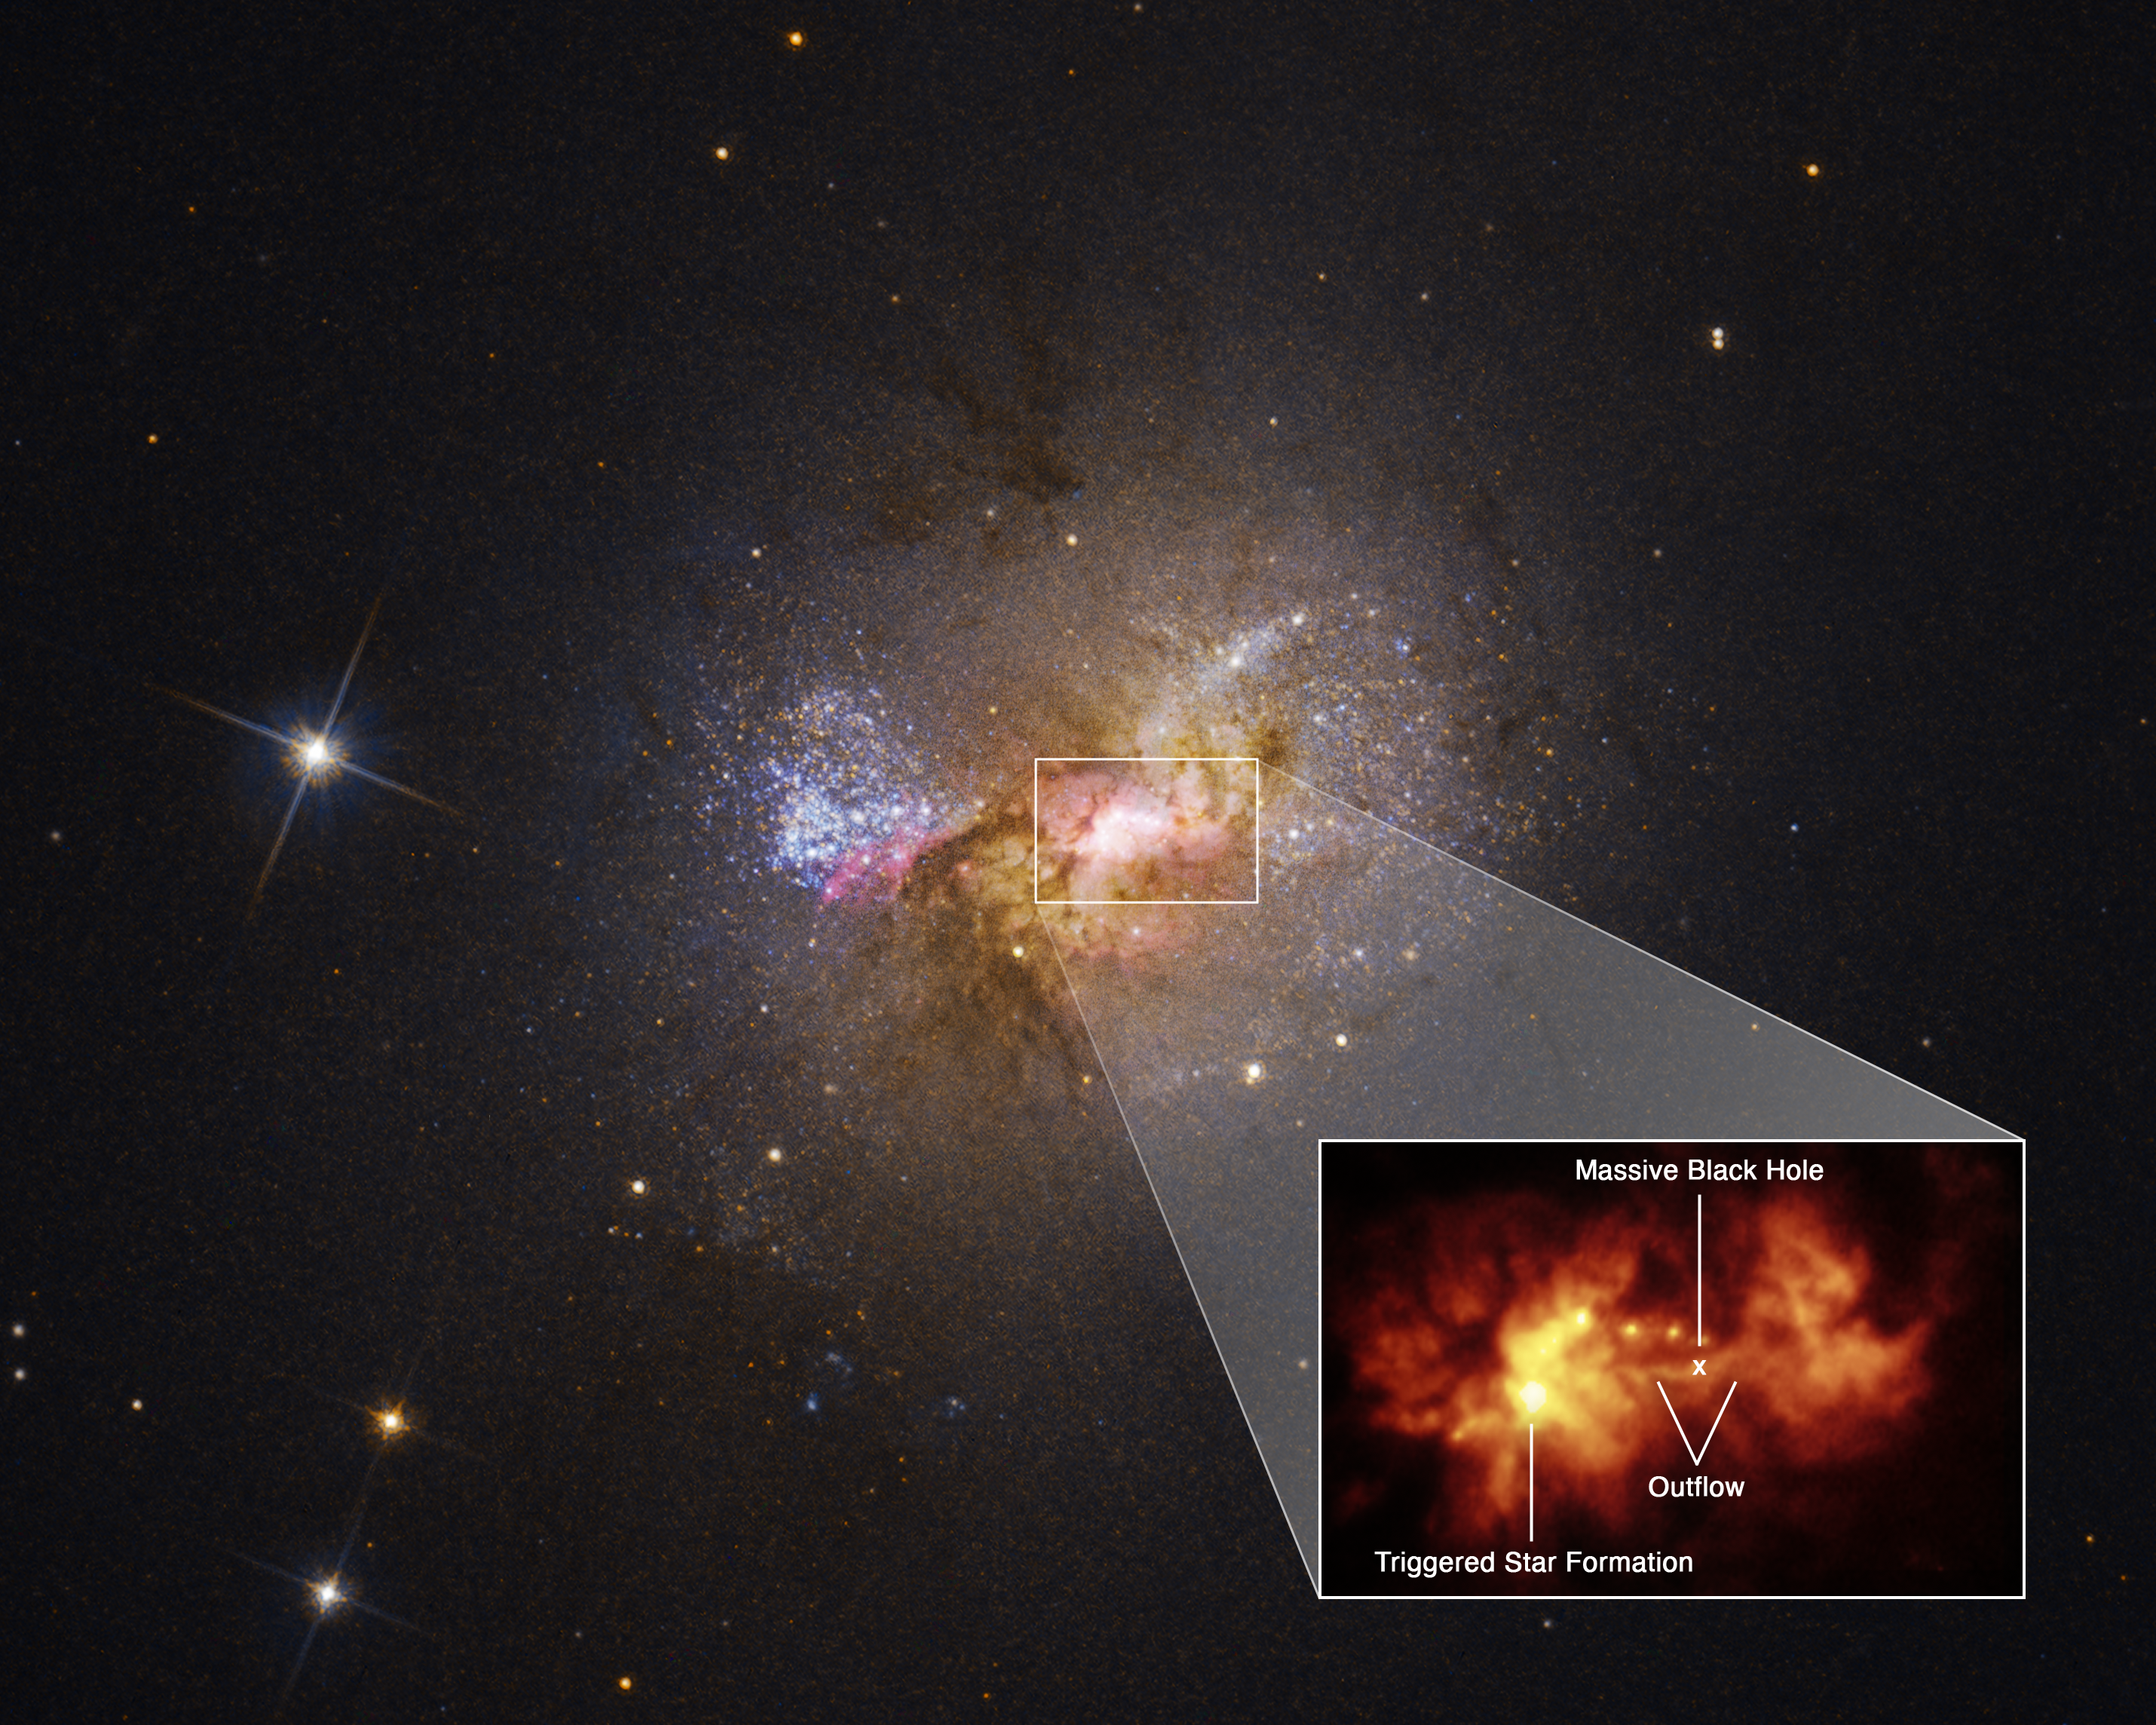 Powiększony fragment centralnego obszaru galaktyki karłowatej Henize 2-10 prezentuje ślady wypływu (ang. outflow) materii. Jest to swego rodzaju most o długości około 230 lat świetlnych składający się z gorącego gazu, który łączy masywną czarną dziurę o masie ~1 000 000 Mʘ z obszarem powstawania gwiazd. Źródło: NASA, ESA, Zachary Schutte (XGI), Amy Reines (XGI), Alyssa Pagan (STScI)